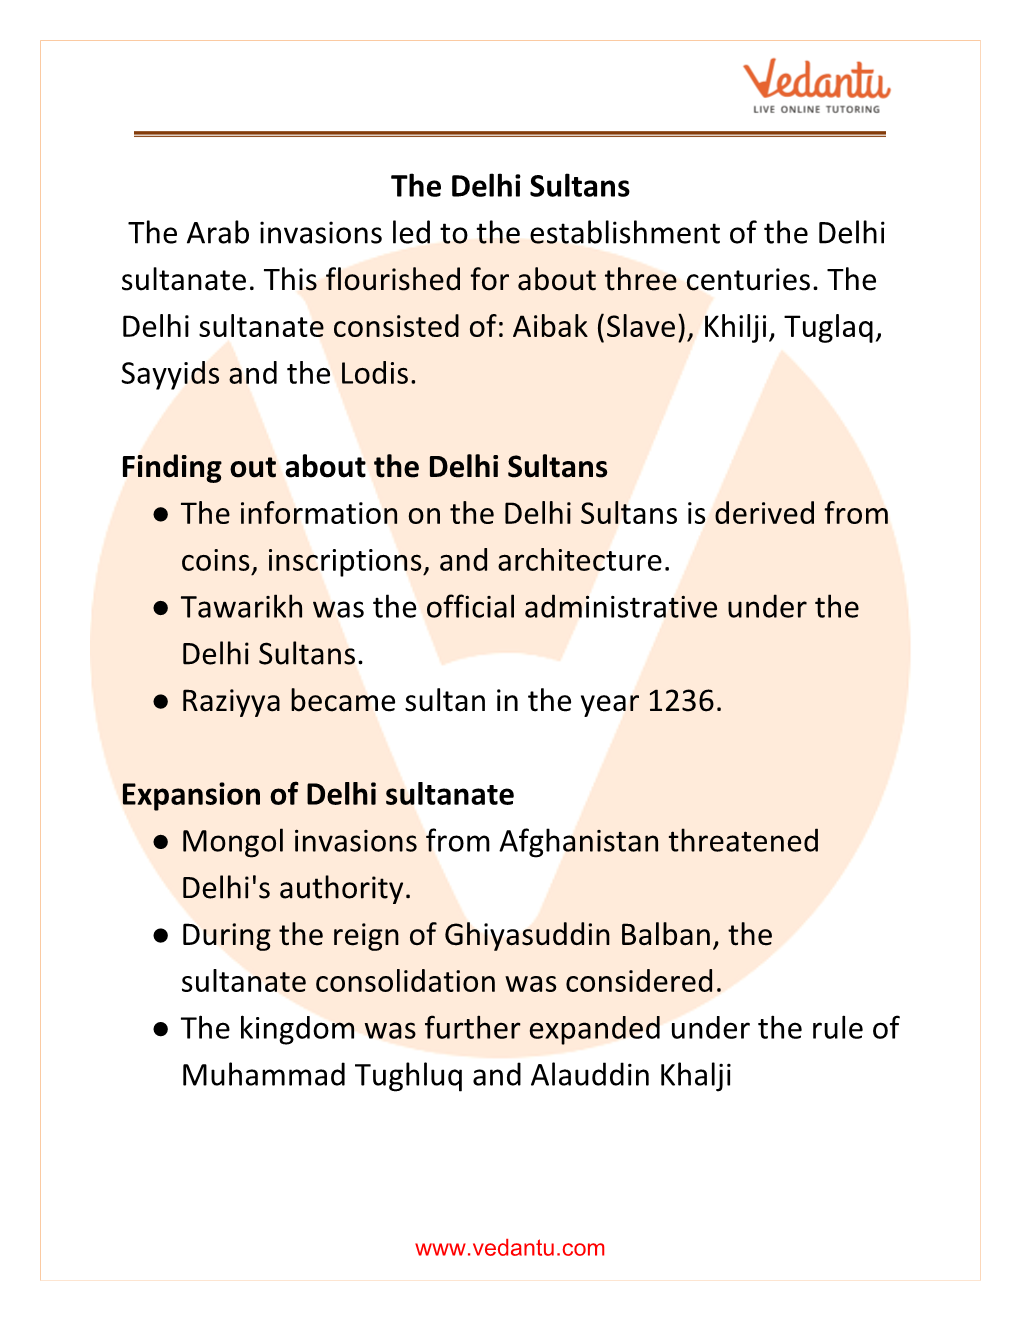 The Delhi Sultans the Arab Invasions Led to the Establishment of the Delhi Sultanate